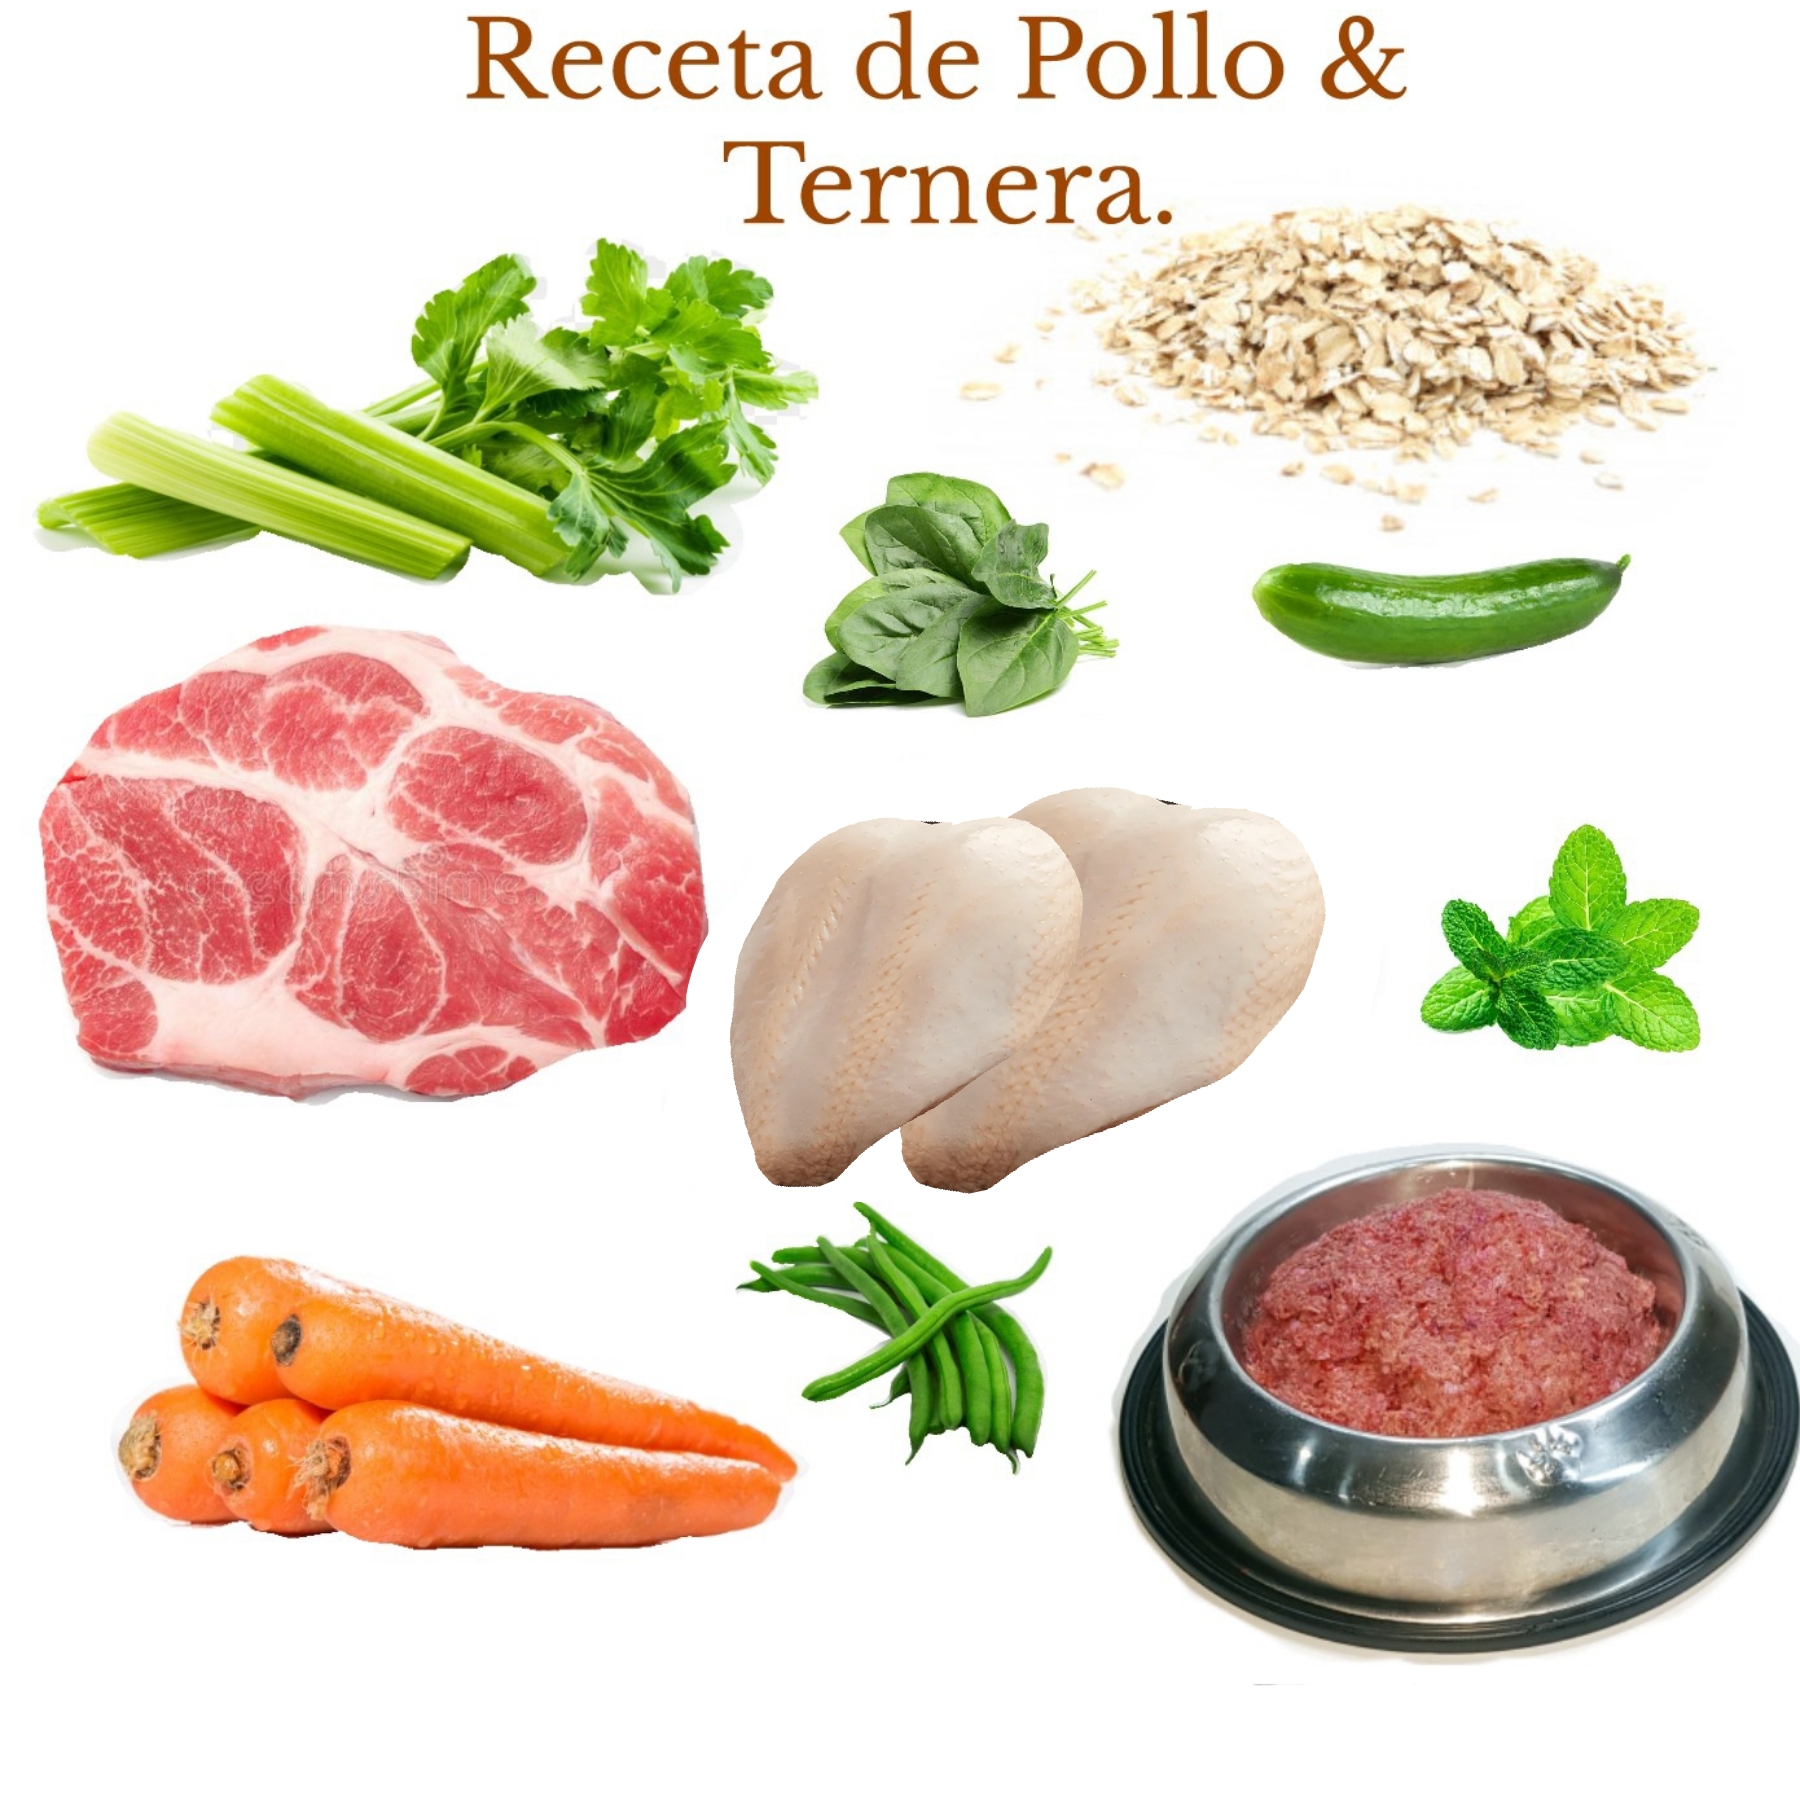 Receta Natural de Vísceras & Pollo - Dieta Barf para perros y gatos  Alimento y comida cacera natural